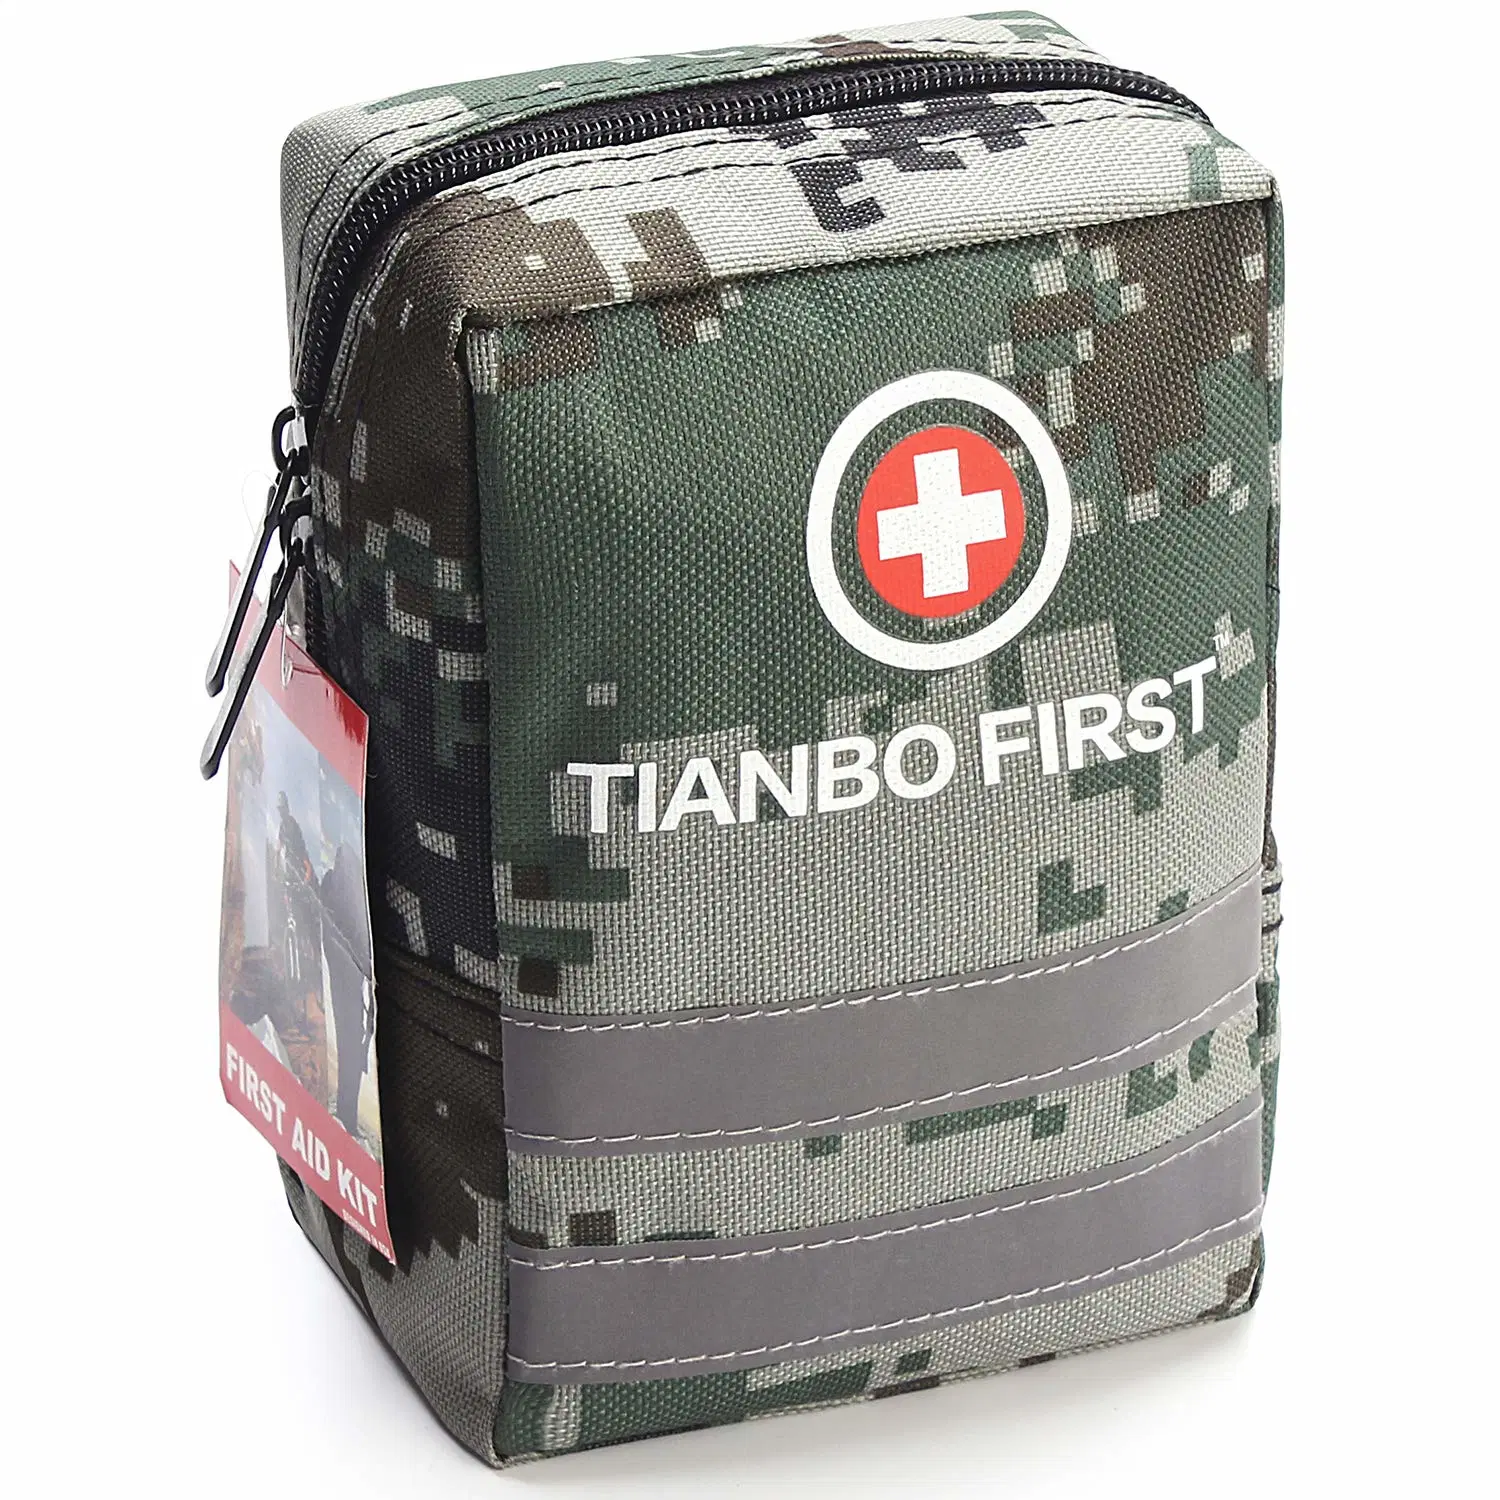 Boîte d'urgence certifiée Kit professionnel personnalisé de survie multifonction d'abord médical Kit d'aide